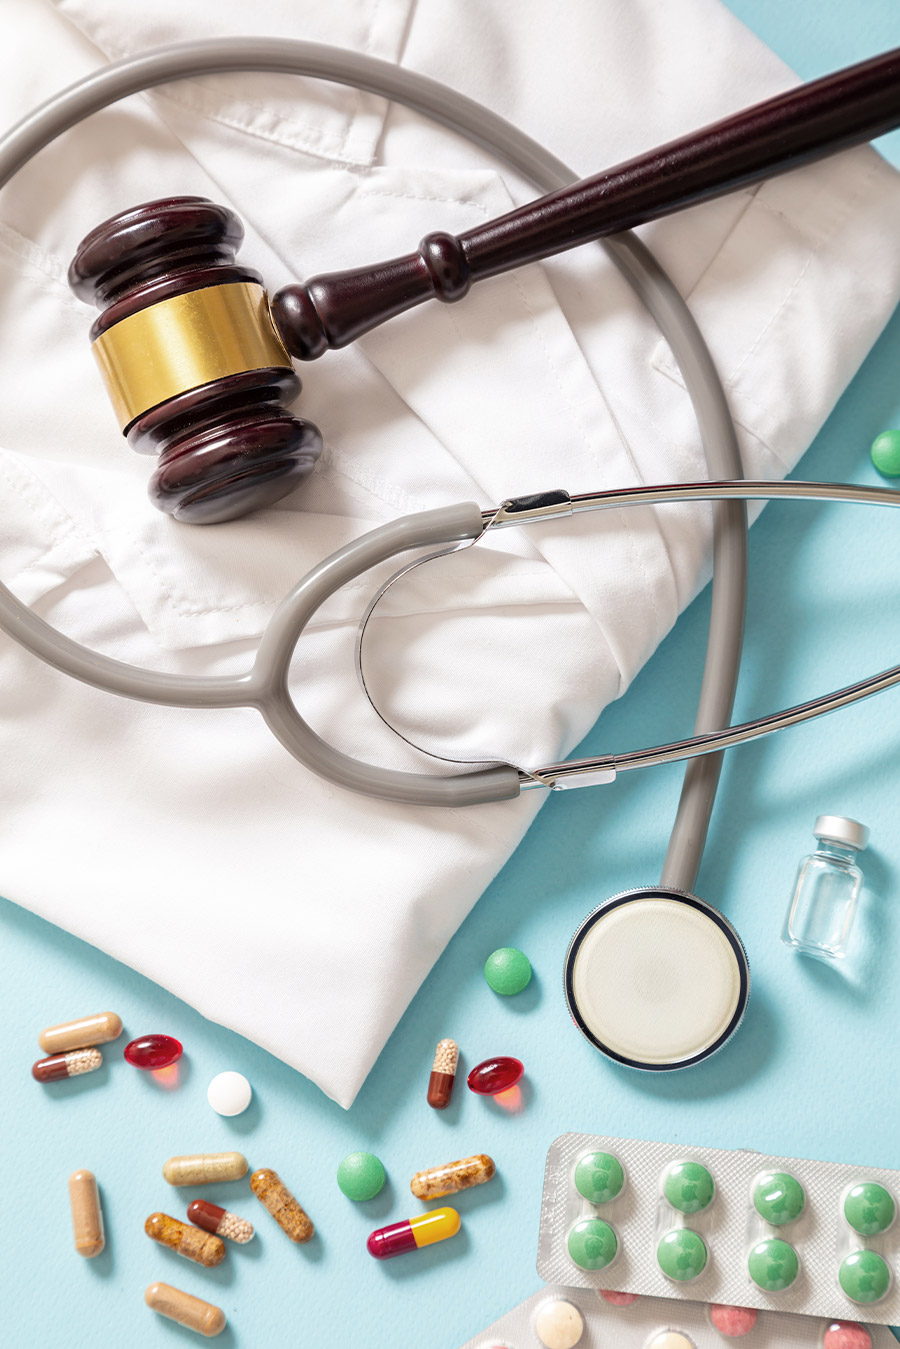  Responsabilità medica e sanitaria: studio legale di avvocati ad Arezzo